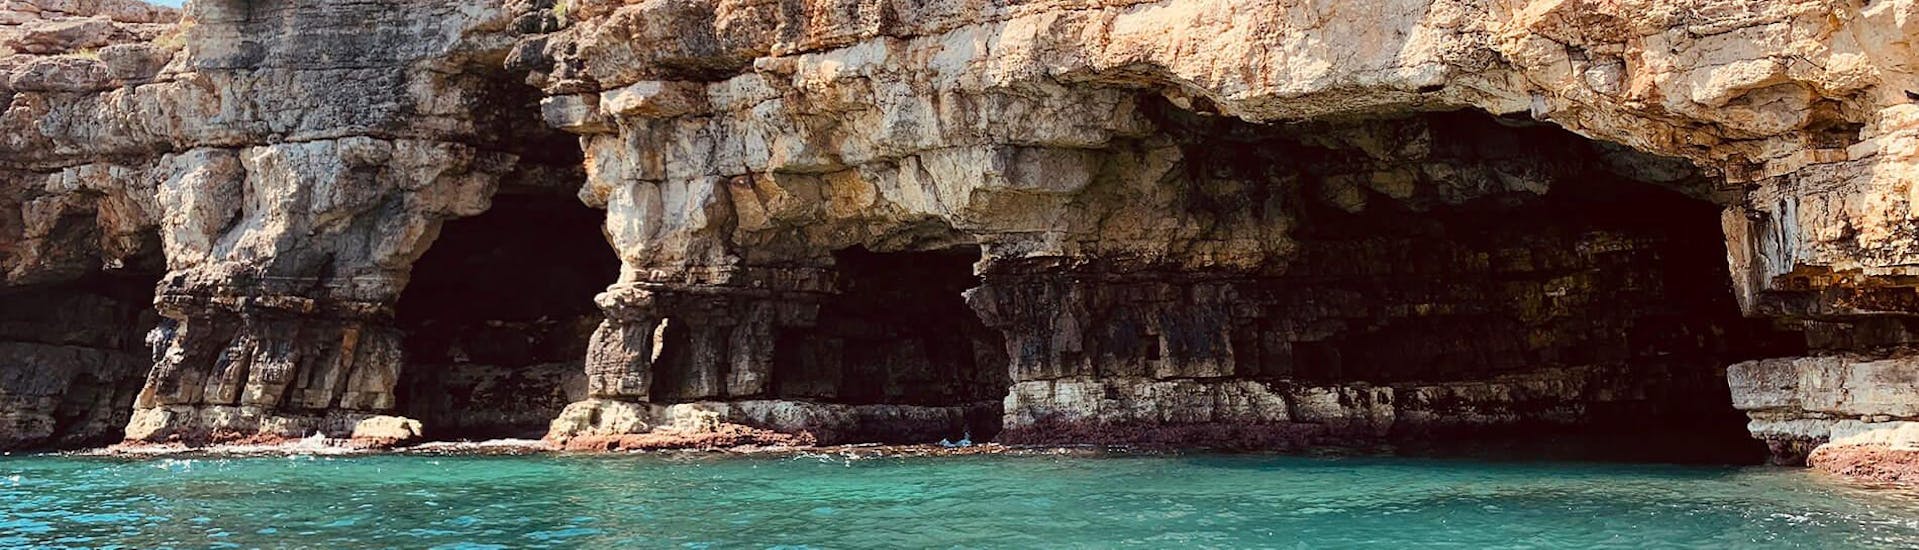 Eine private Segeltour mit Pugliamare führt von Monopoli zu den Höhlen von Polignano a Mare.